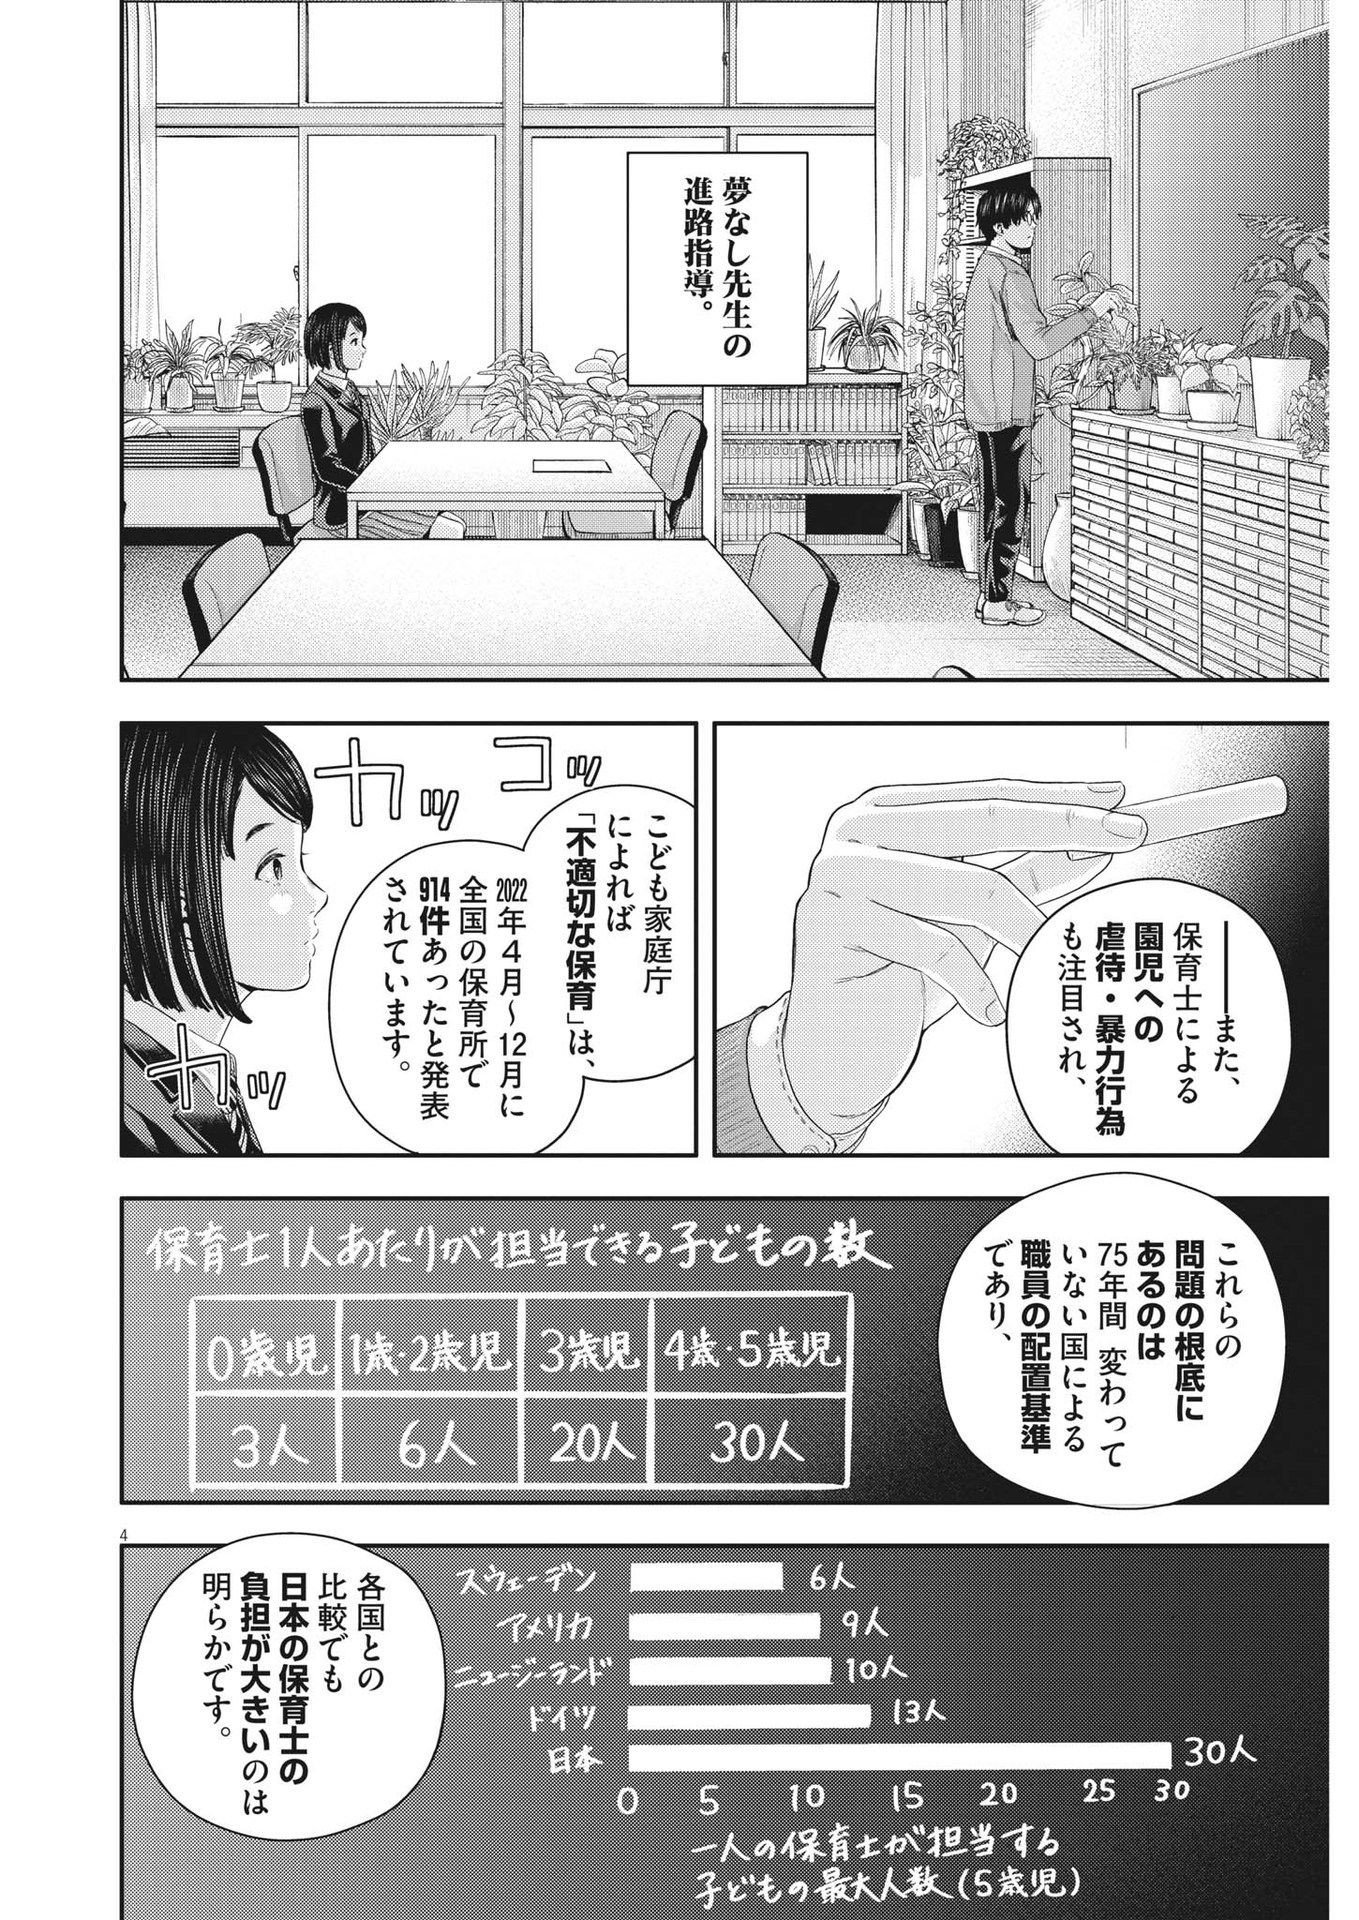 Yumenashi-sensei no Shinroshidou - Chapter 21 - Page 4